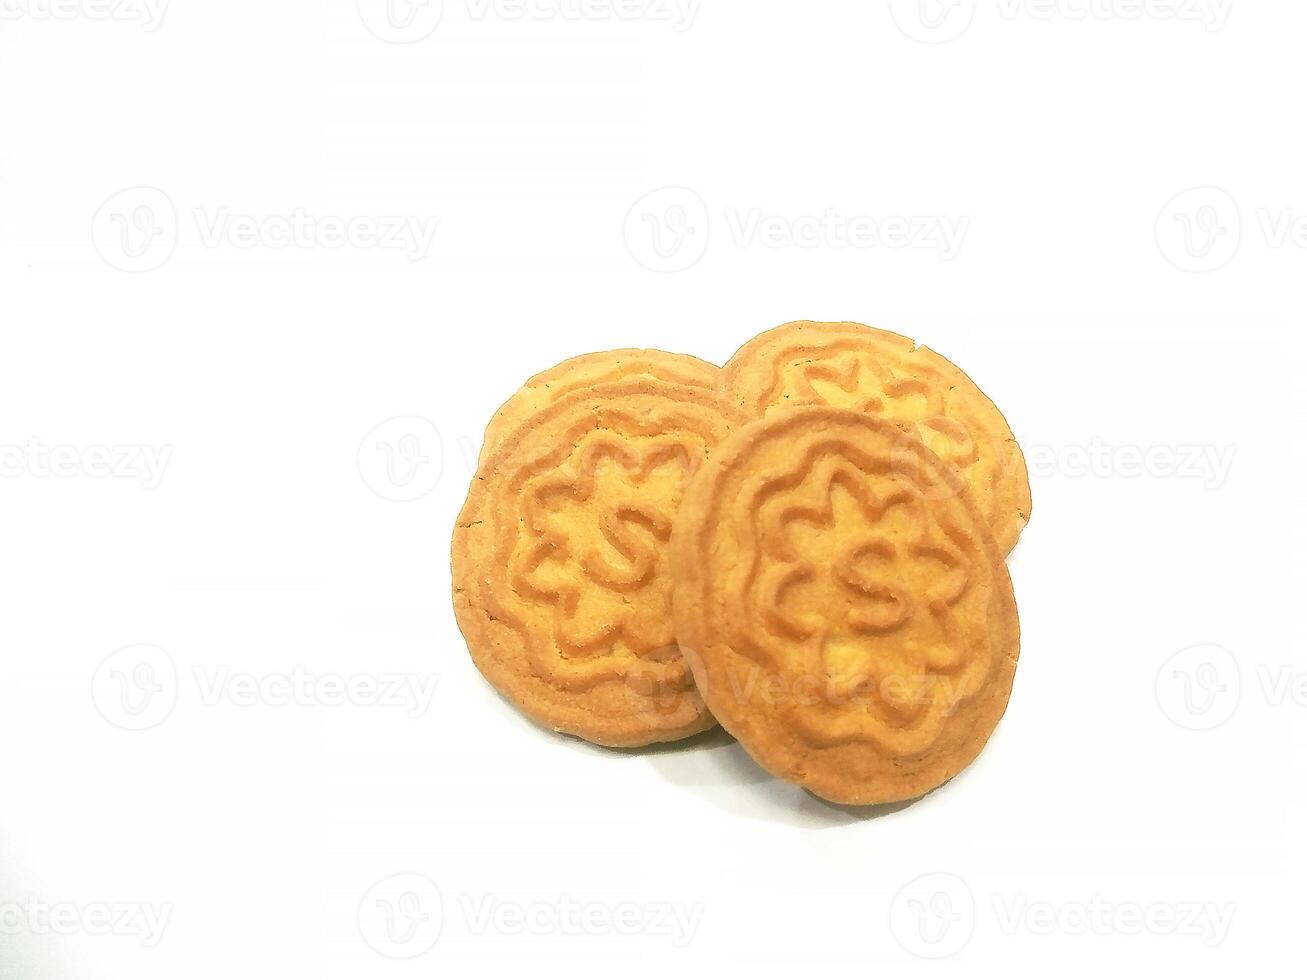 blé des biscuits des biscuits - une empiler de délicieux blé rond des biscuits avec une peu les miettes isolé sur blanc photo